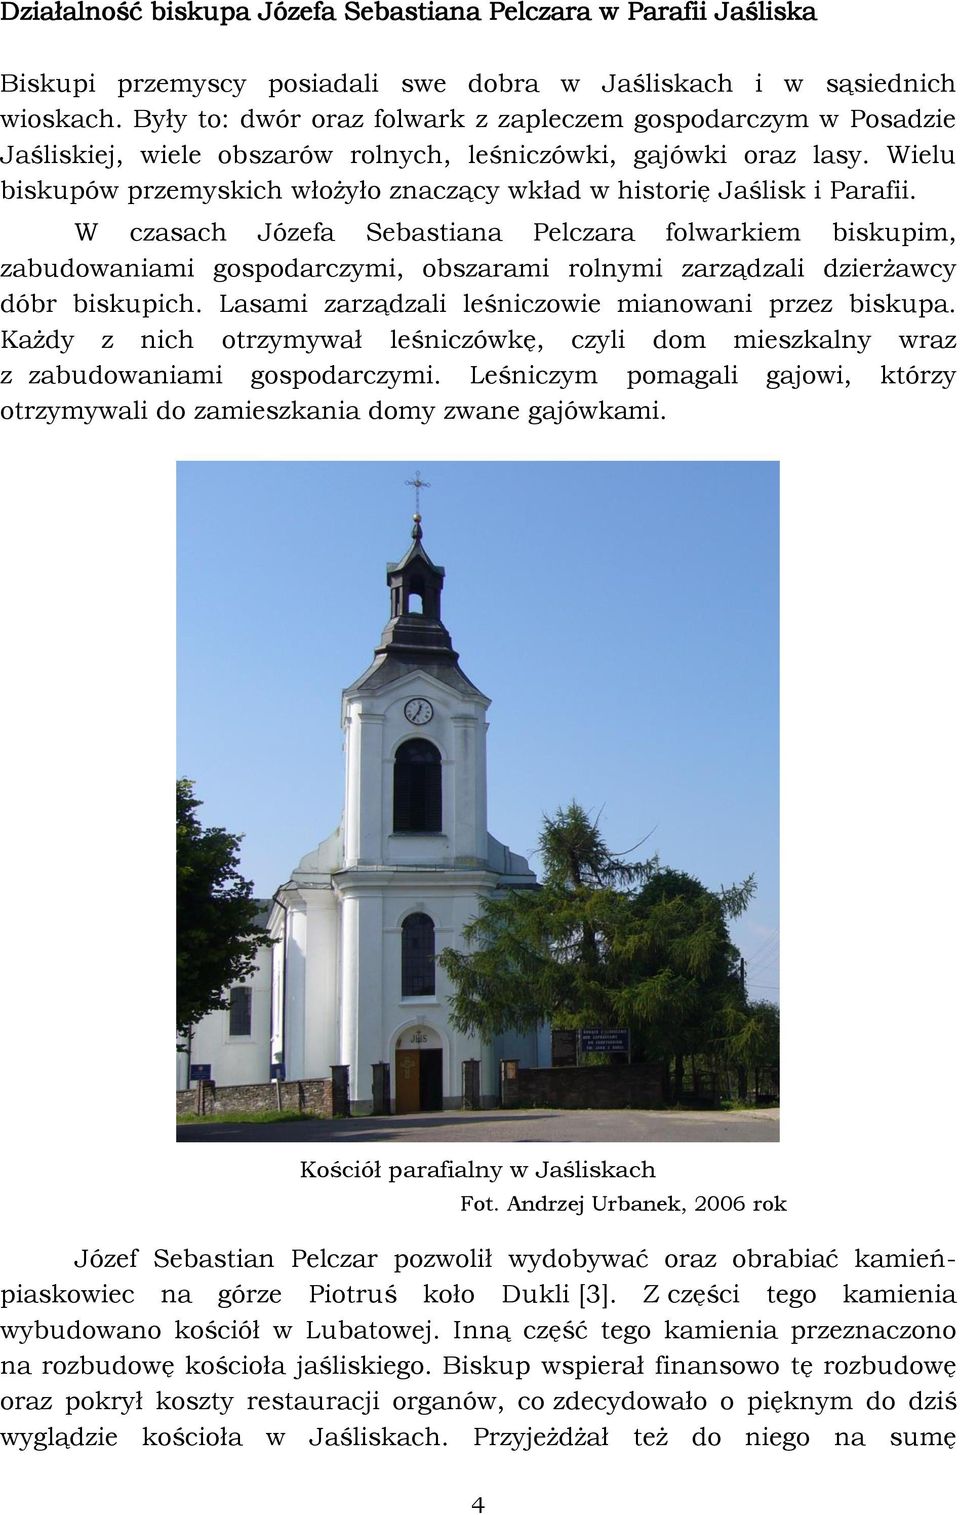 Wielu biskupów przemyskich włożyło znaczący wkład w historię Jaślisk i Parafii.